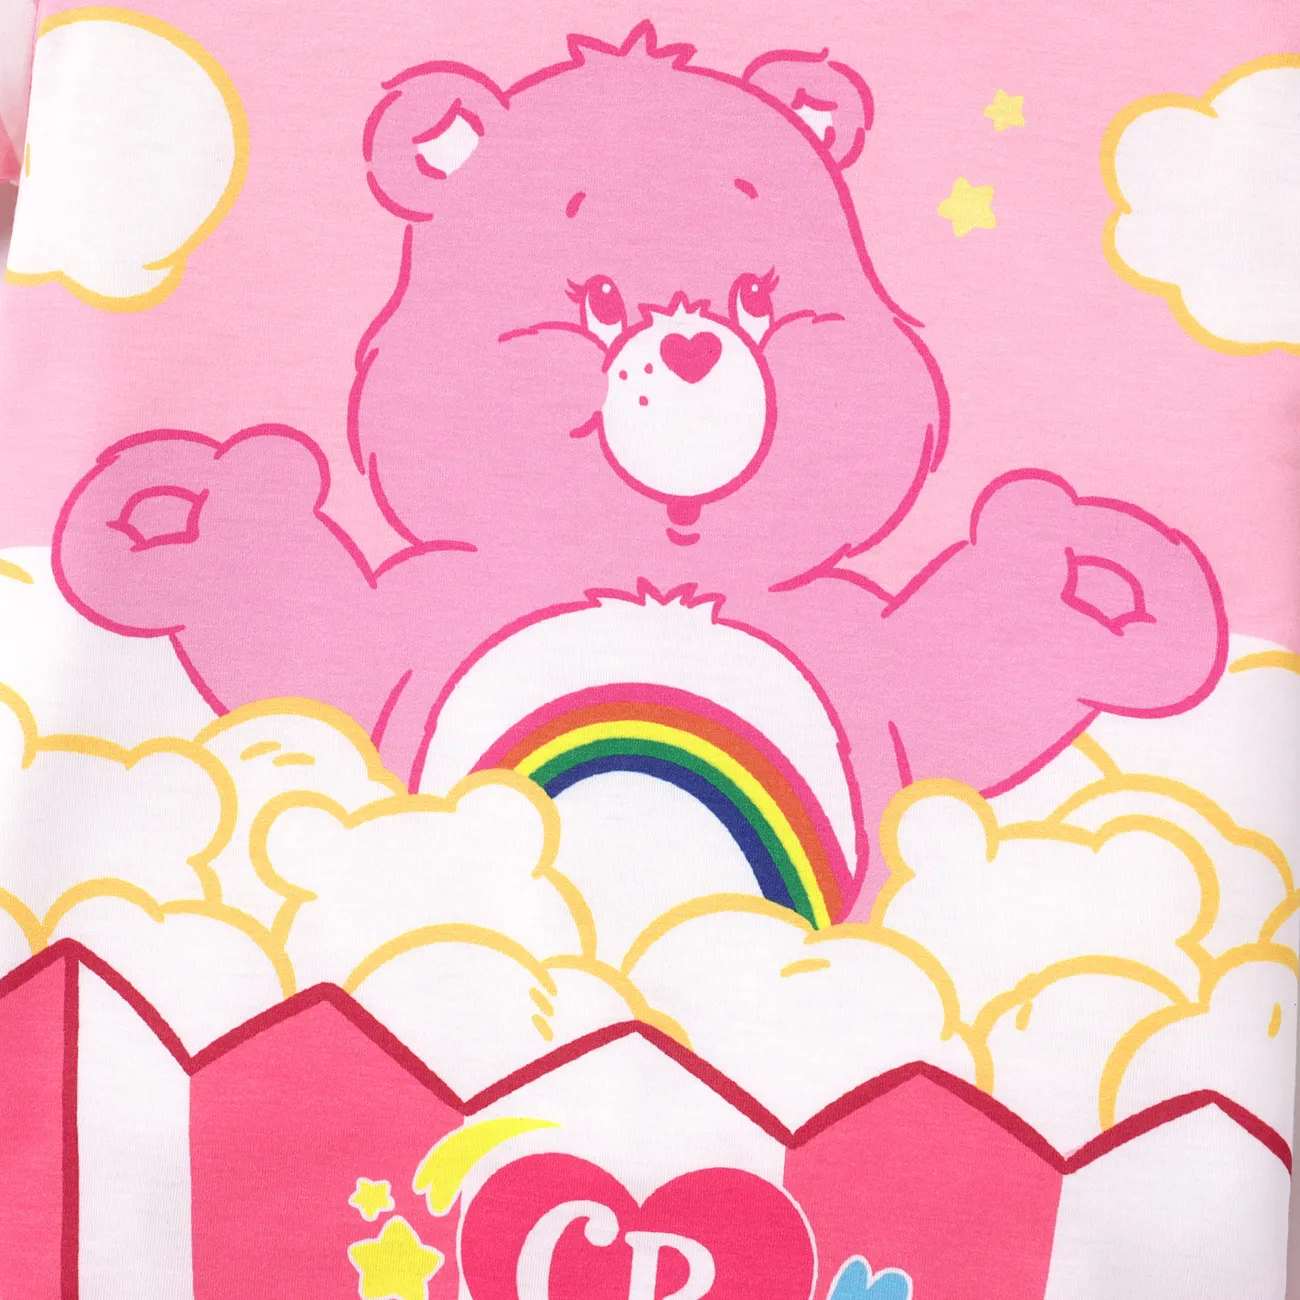 Care Bears Toddler Girl/Boy Naia™ Character Print Short-sleeve Tee Pink big image 1